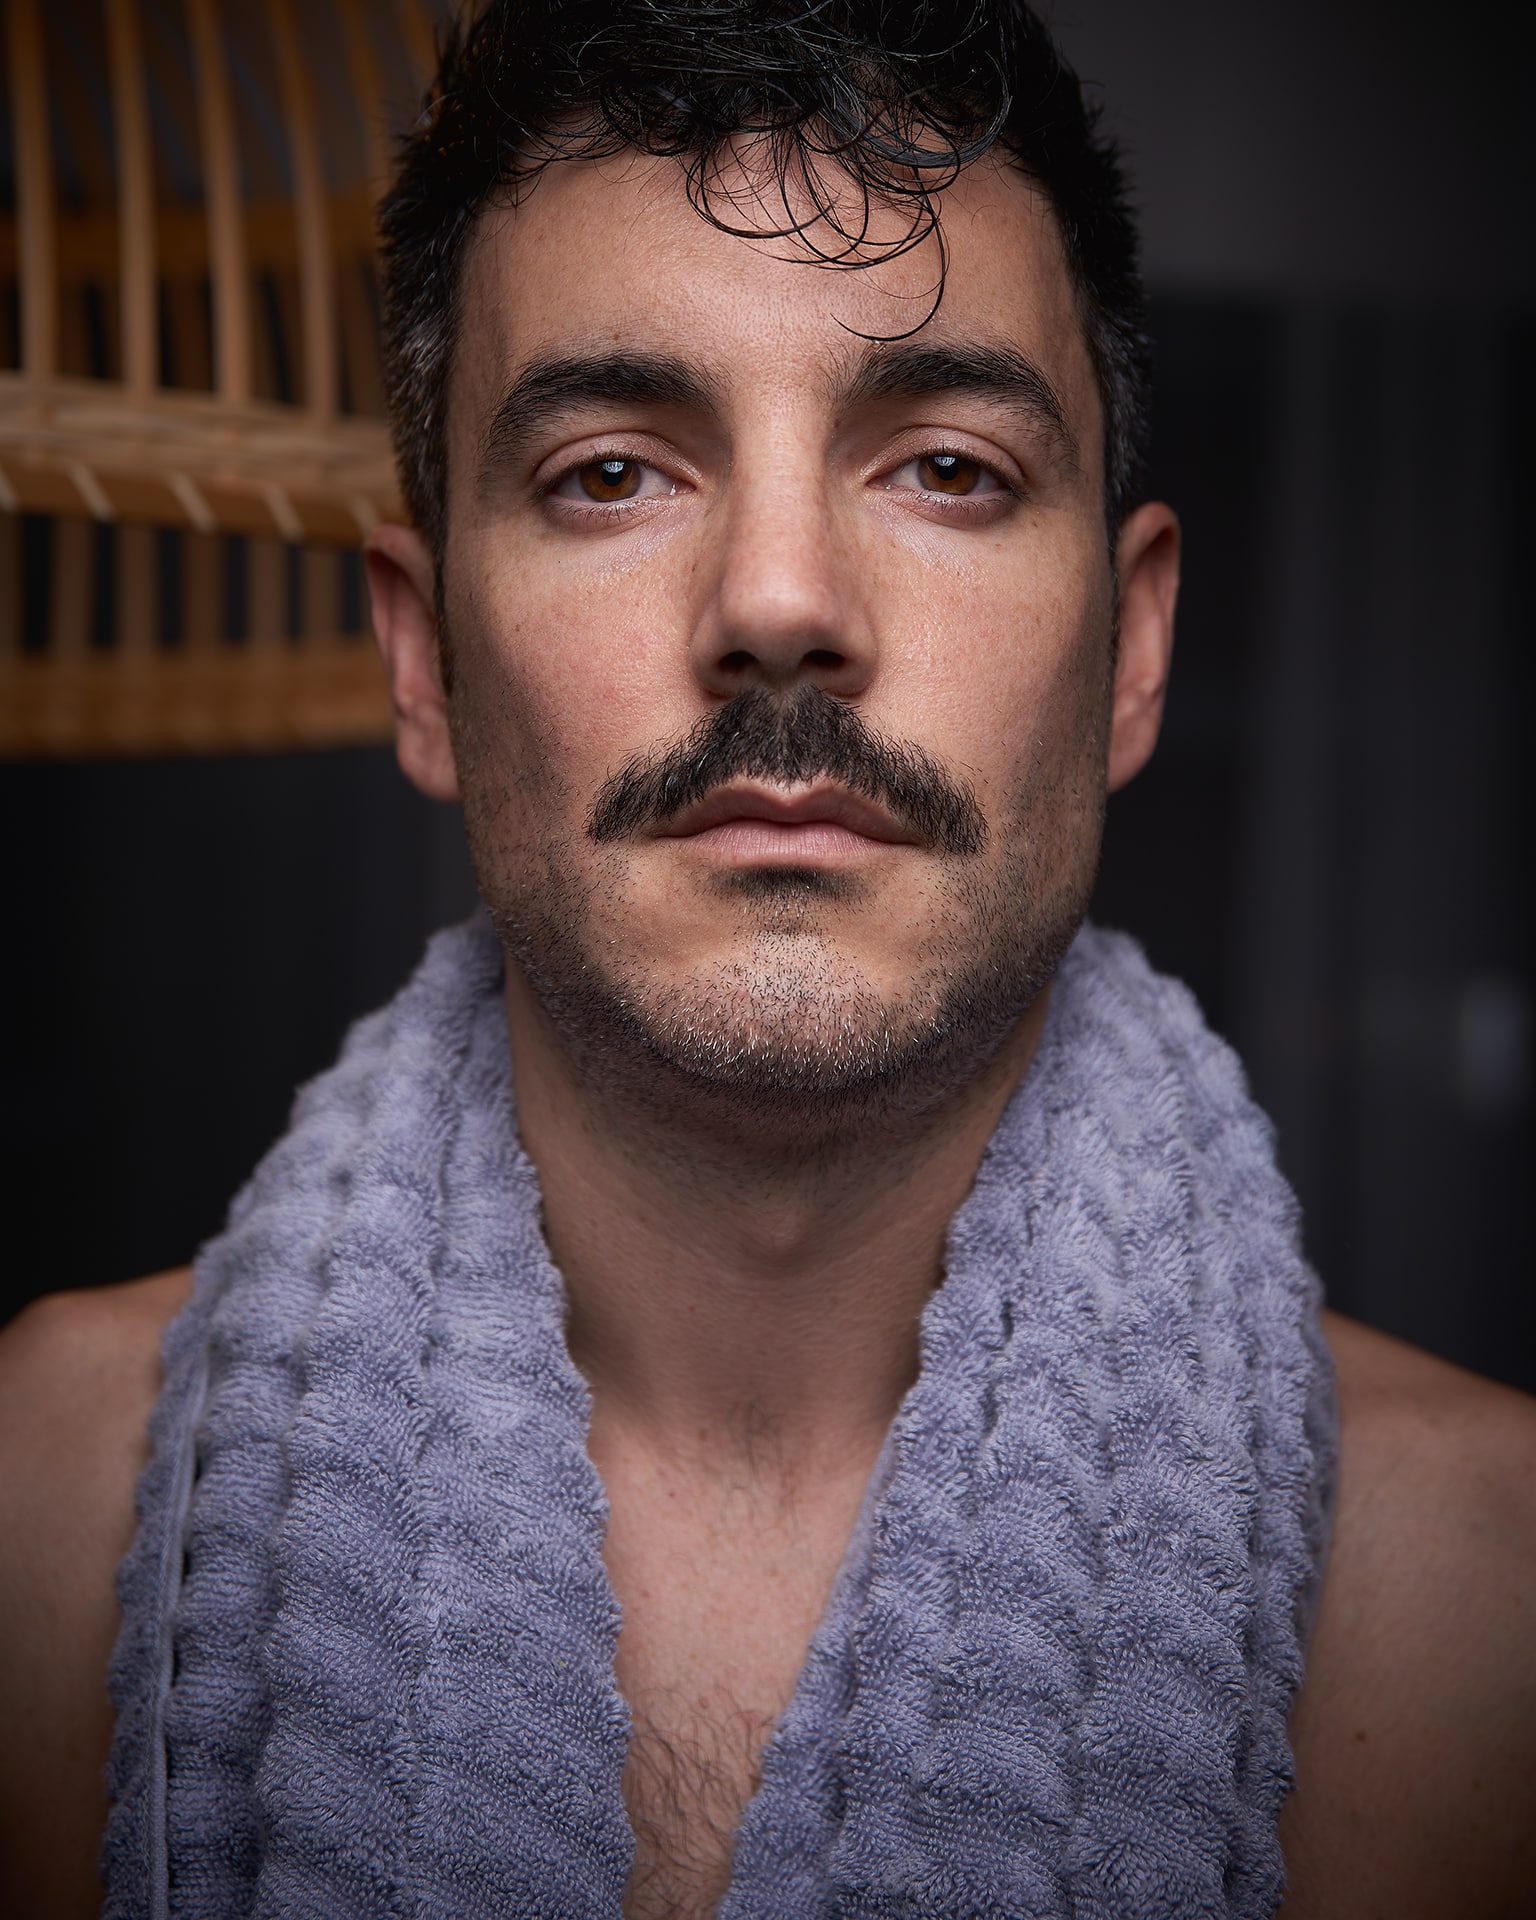 Retrato Movember 2020